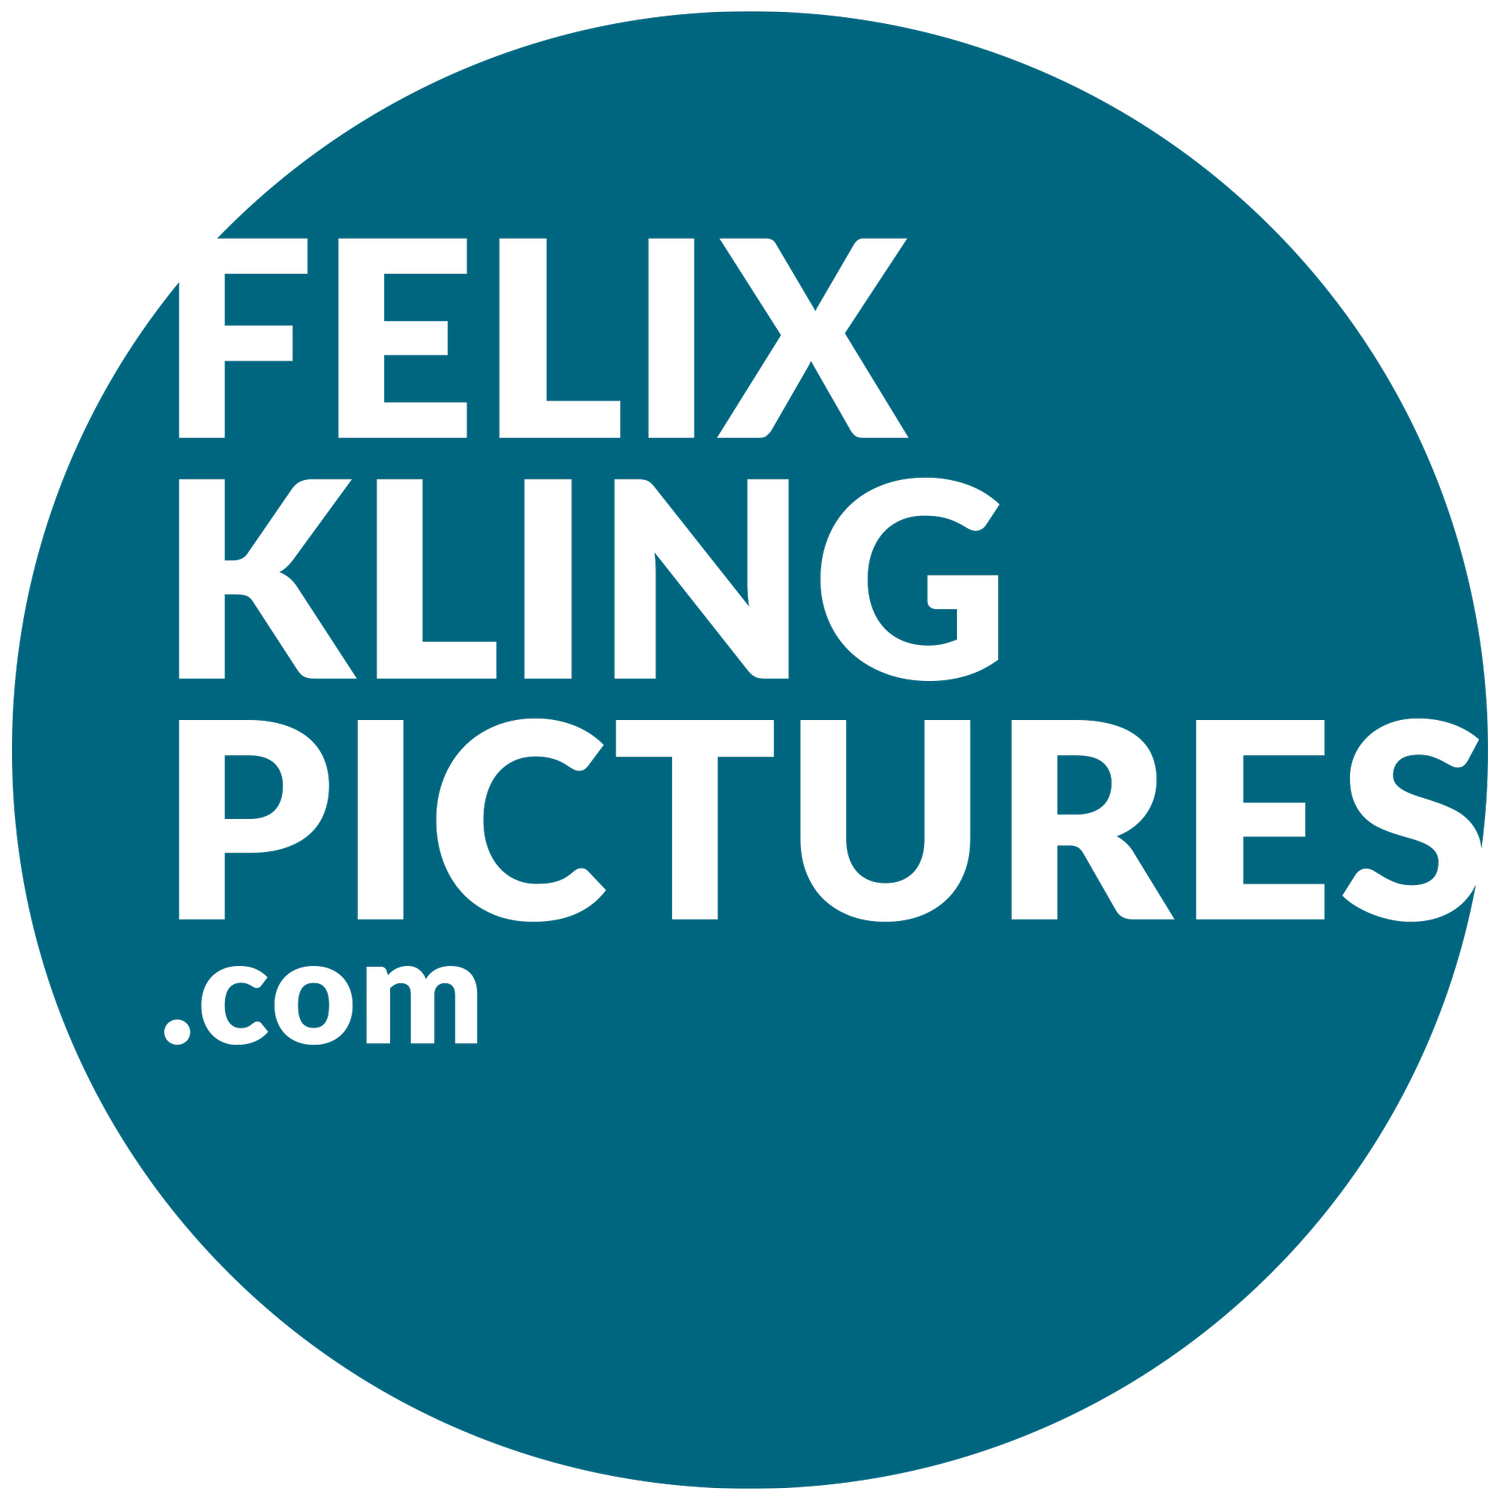 (c) Felixklingpictures.com